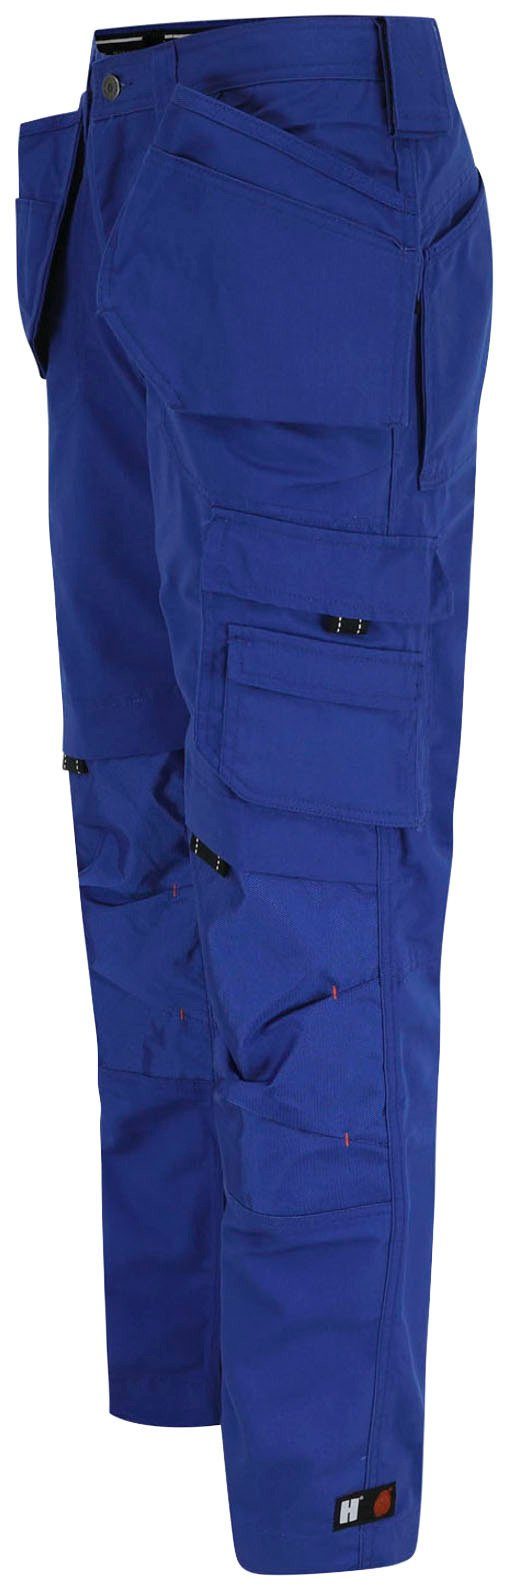 blau Nageltaschen) 11 Dagan Herock Taschen robust, Arbeitshose Wasserabweisend, (inkl. Hose